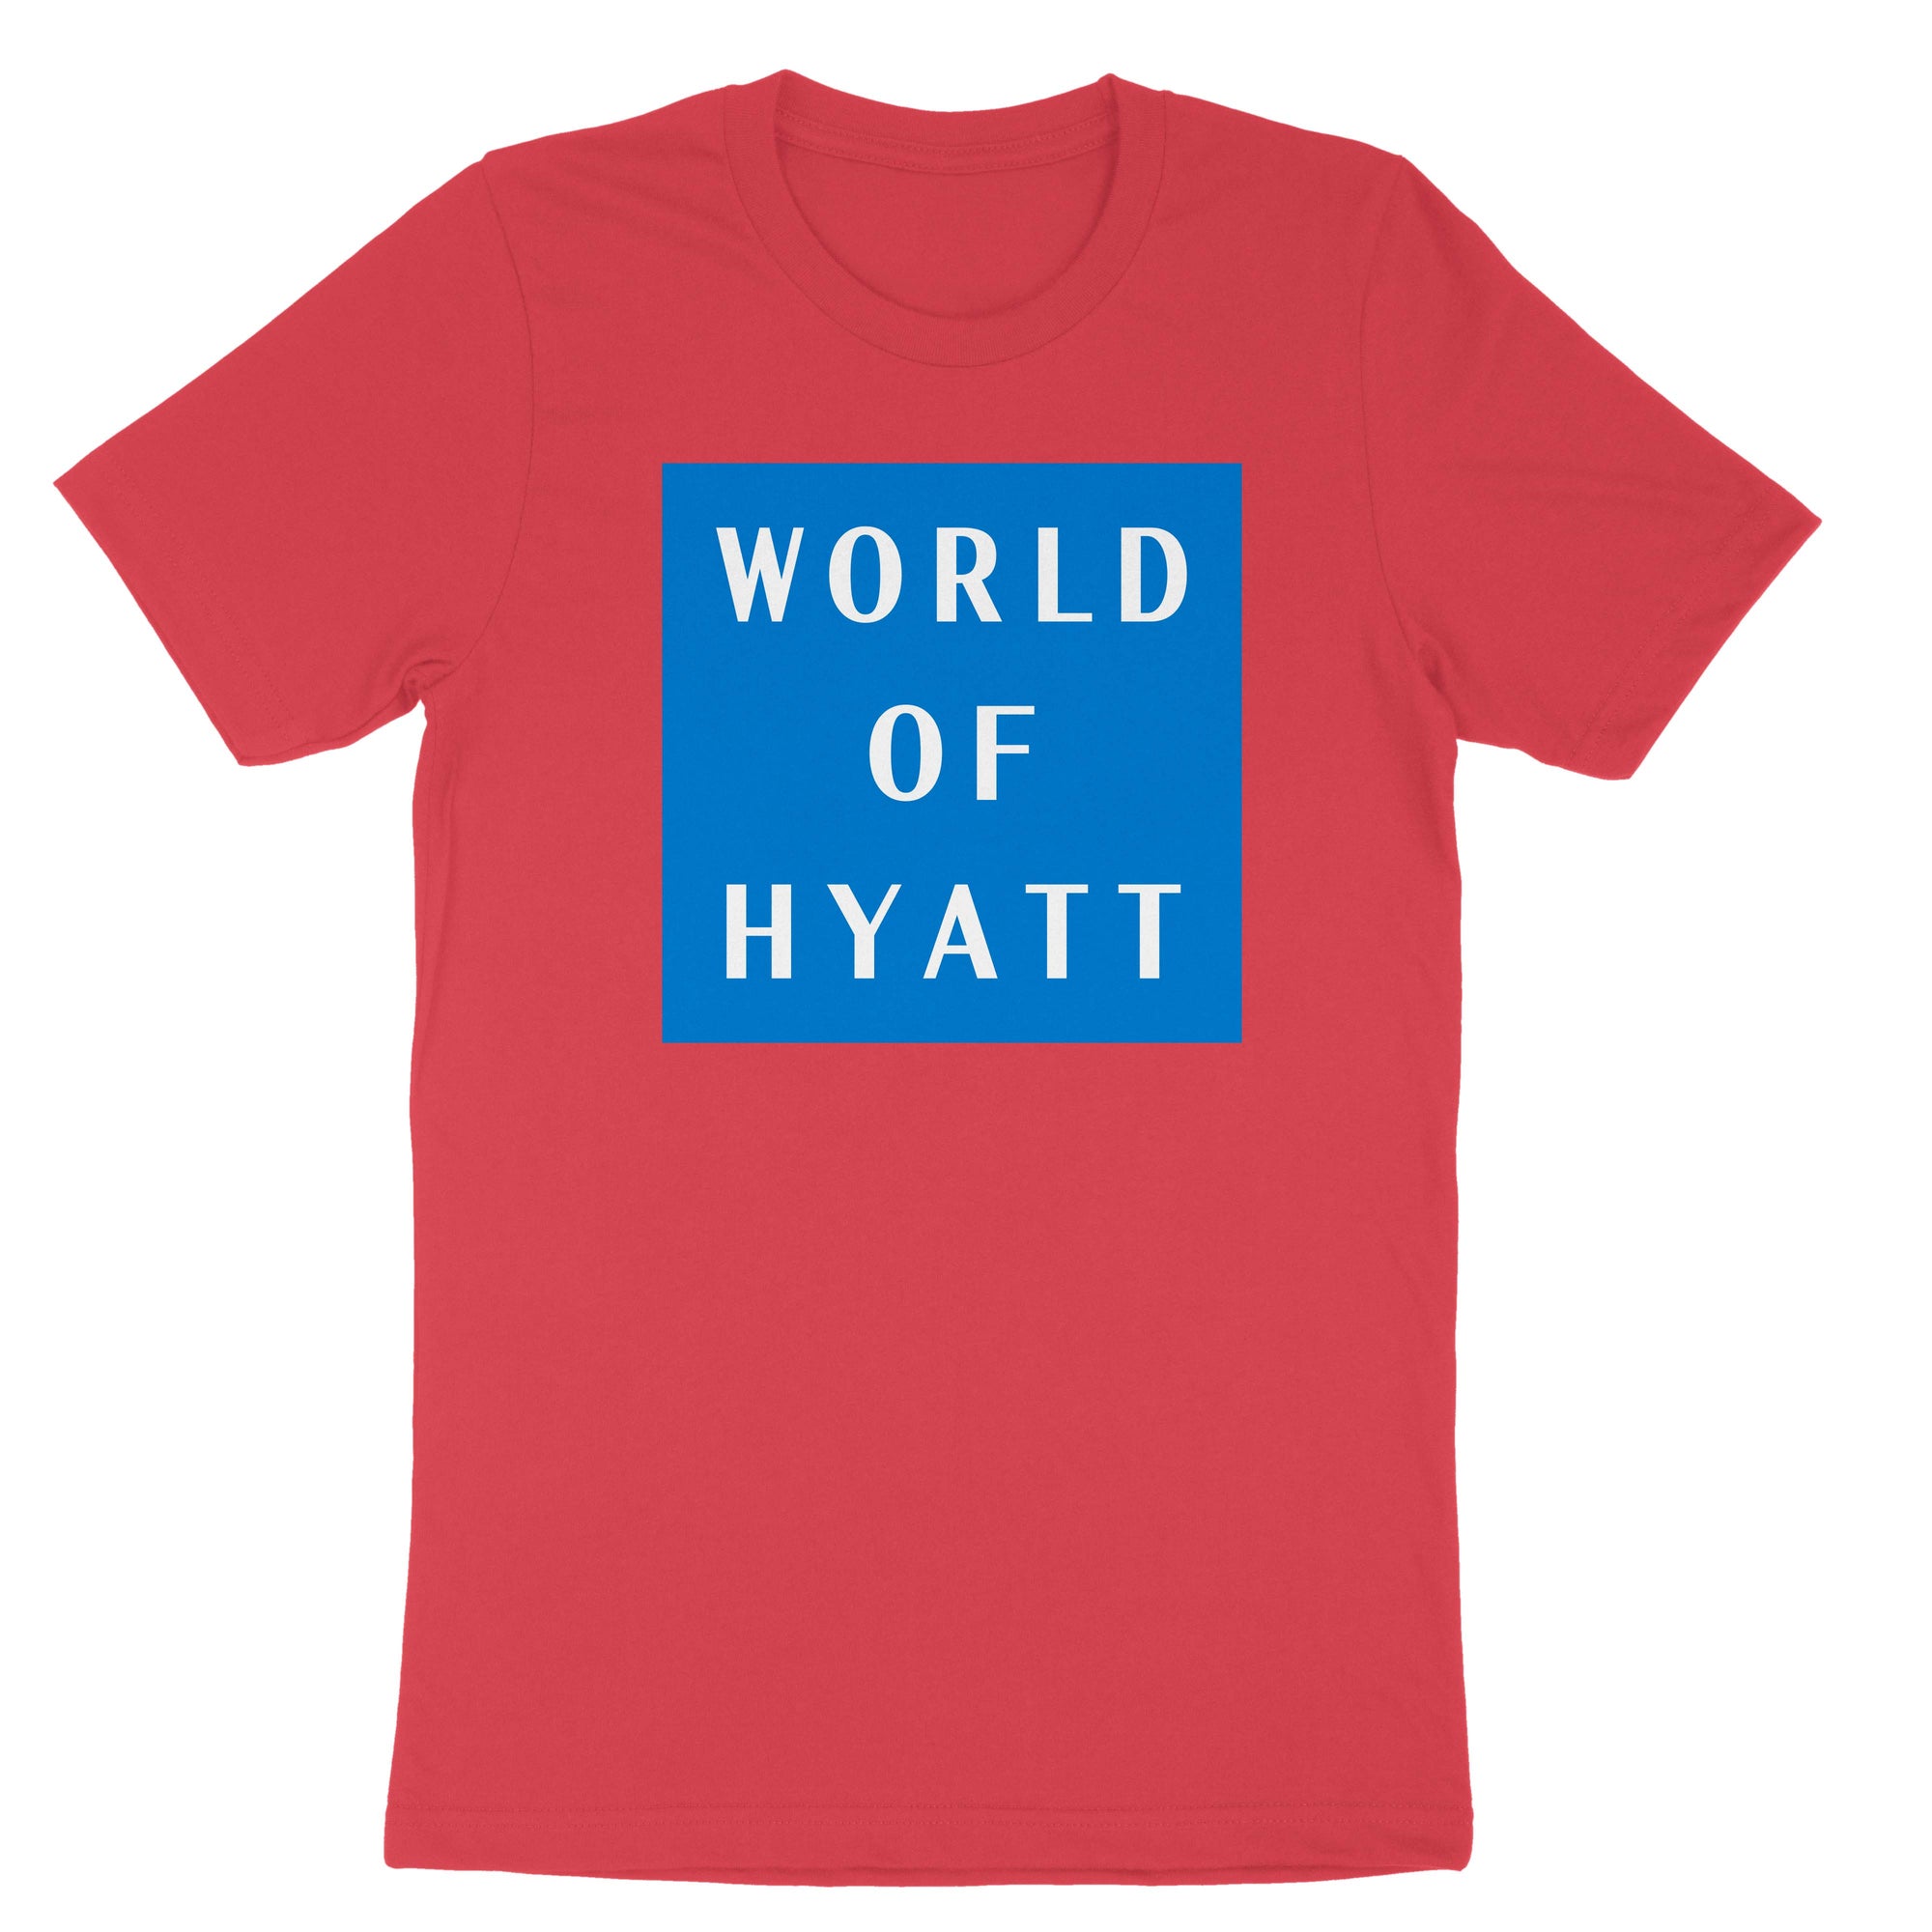 World of Hyatt Volunteer T-Shirt